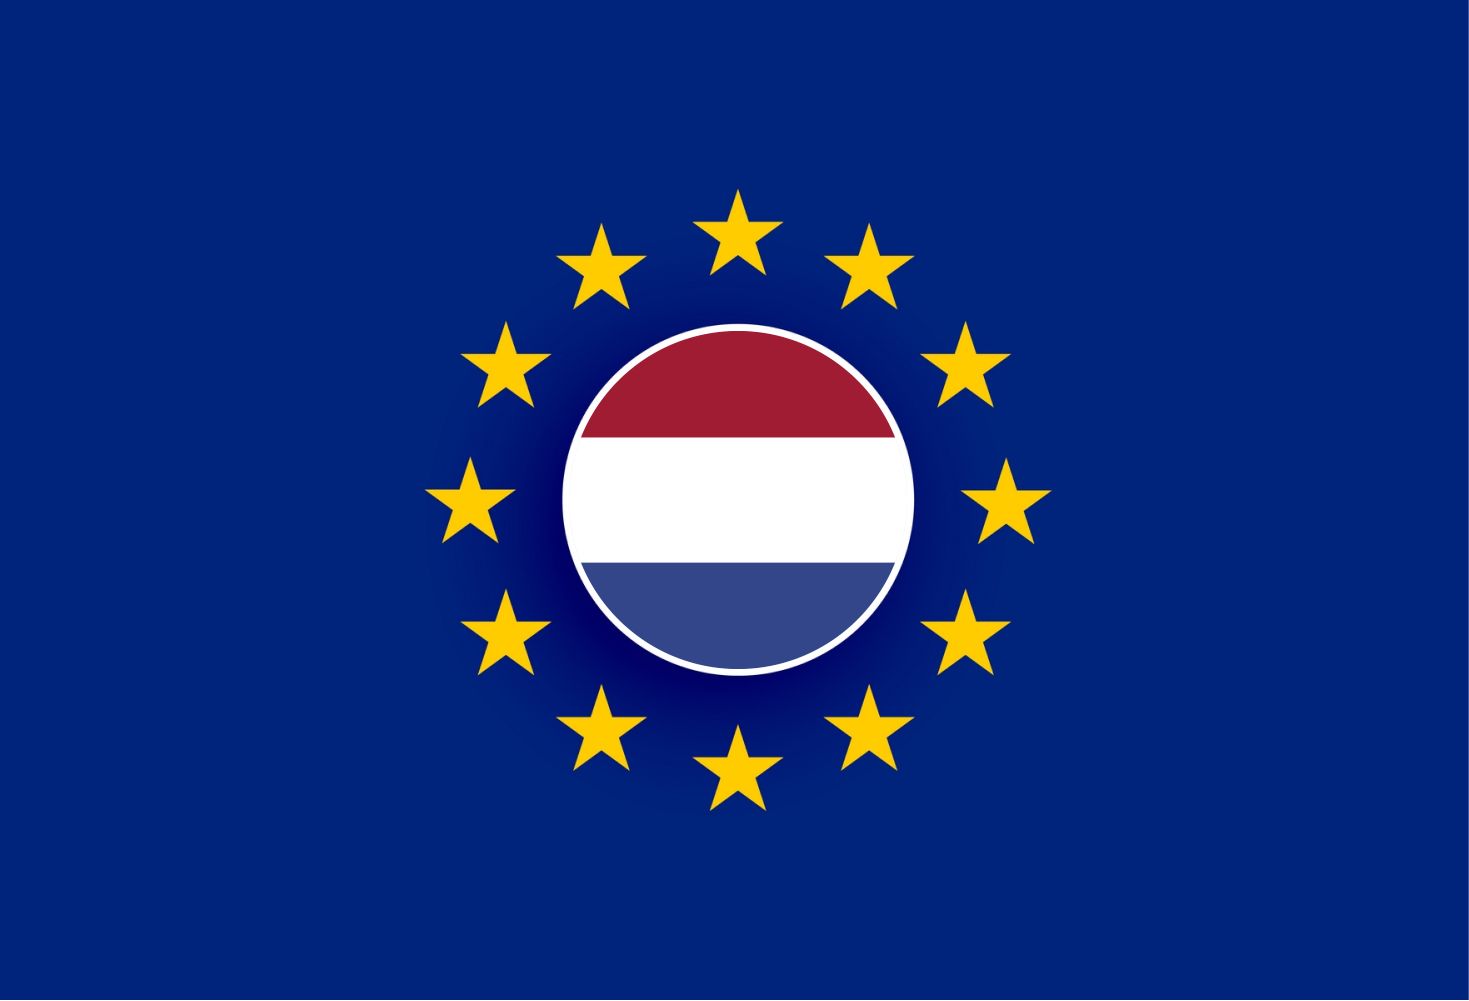  ortada hollanda bayrağı ve etrafında avrupa birliği yıldızlarını temsil eden bir görsel bulunmakta 